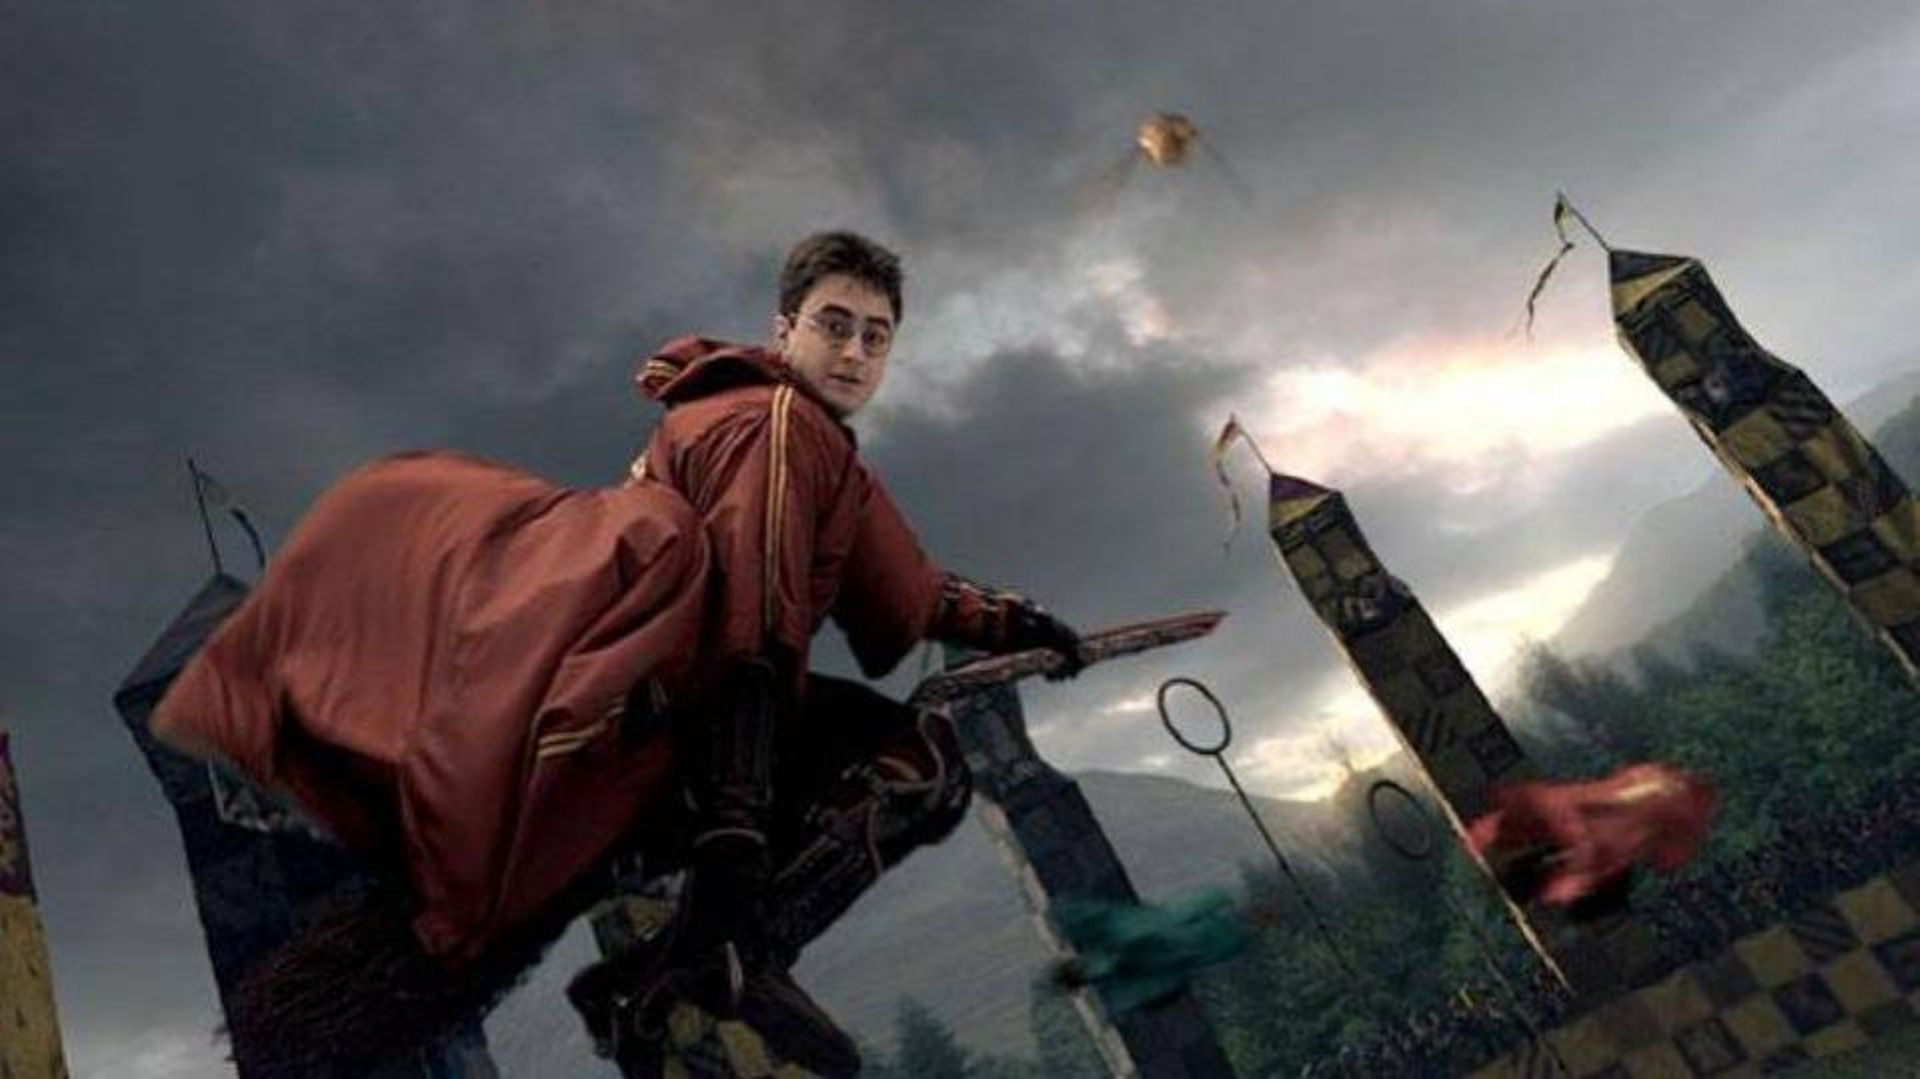 Le Quidditch joué par Harry Potter